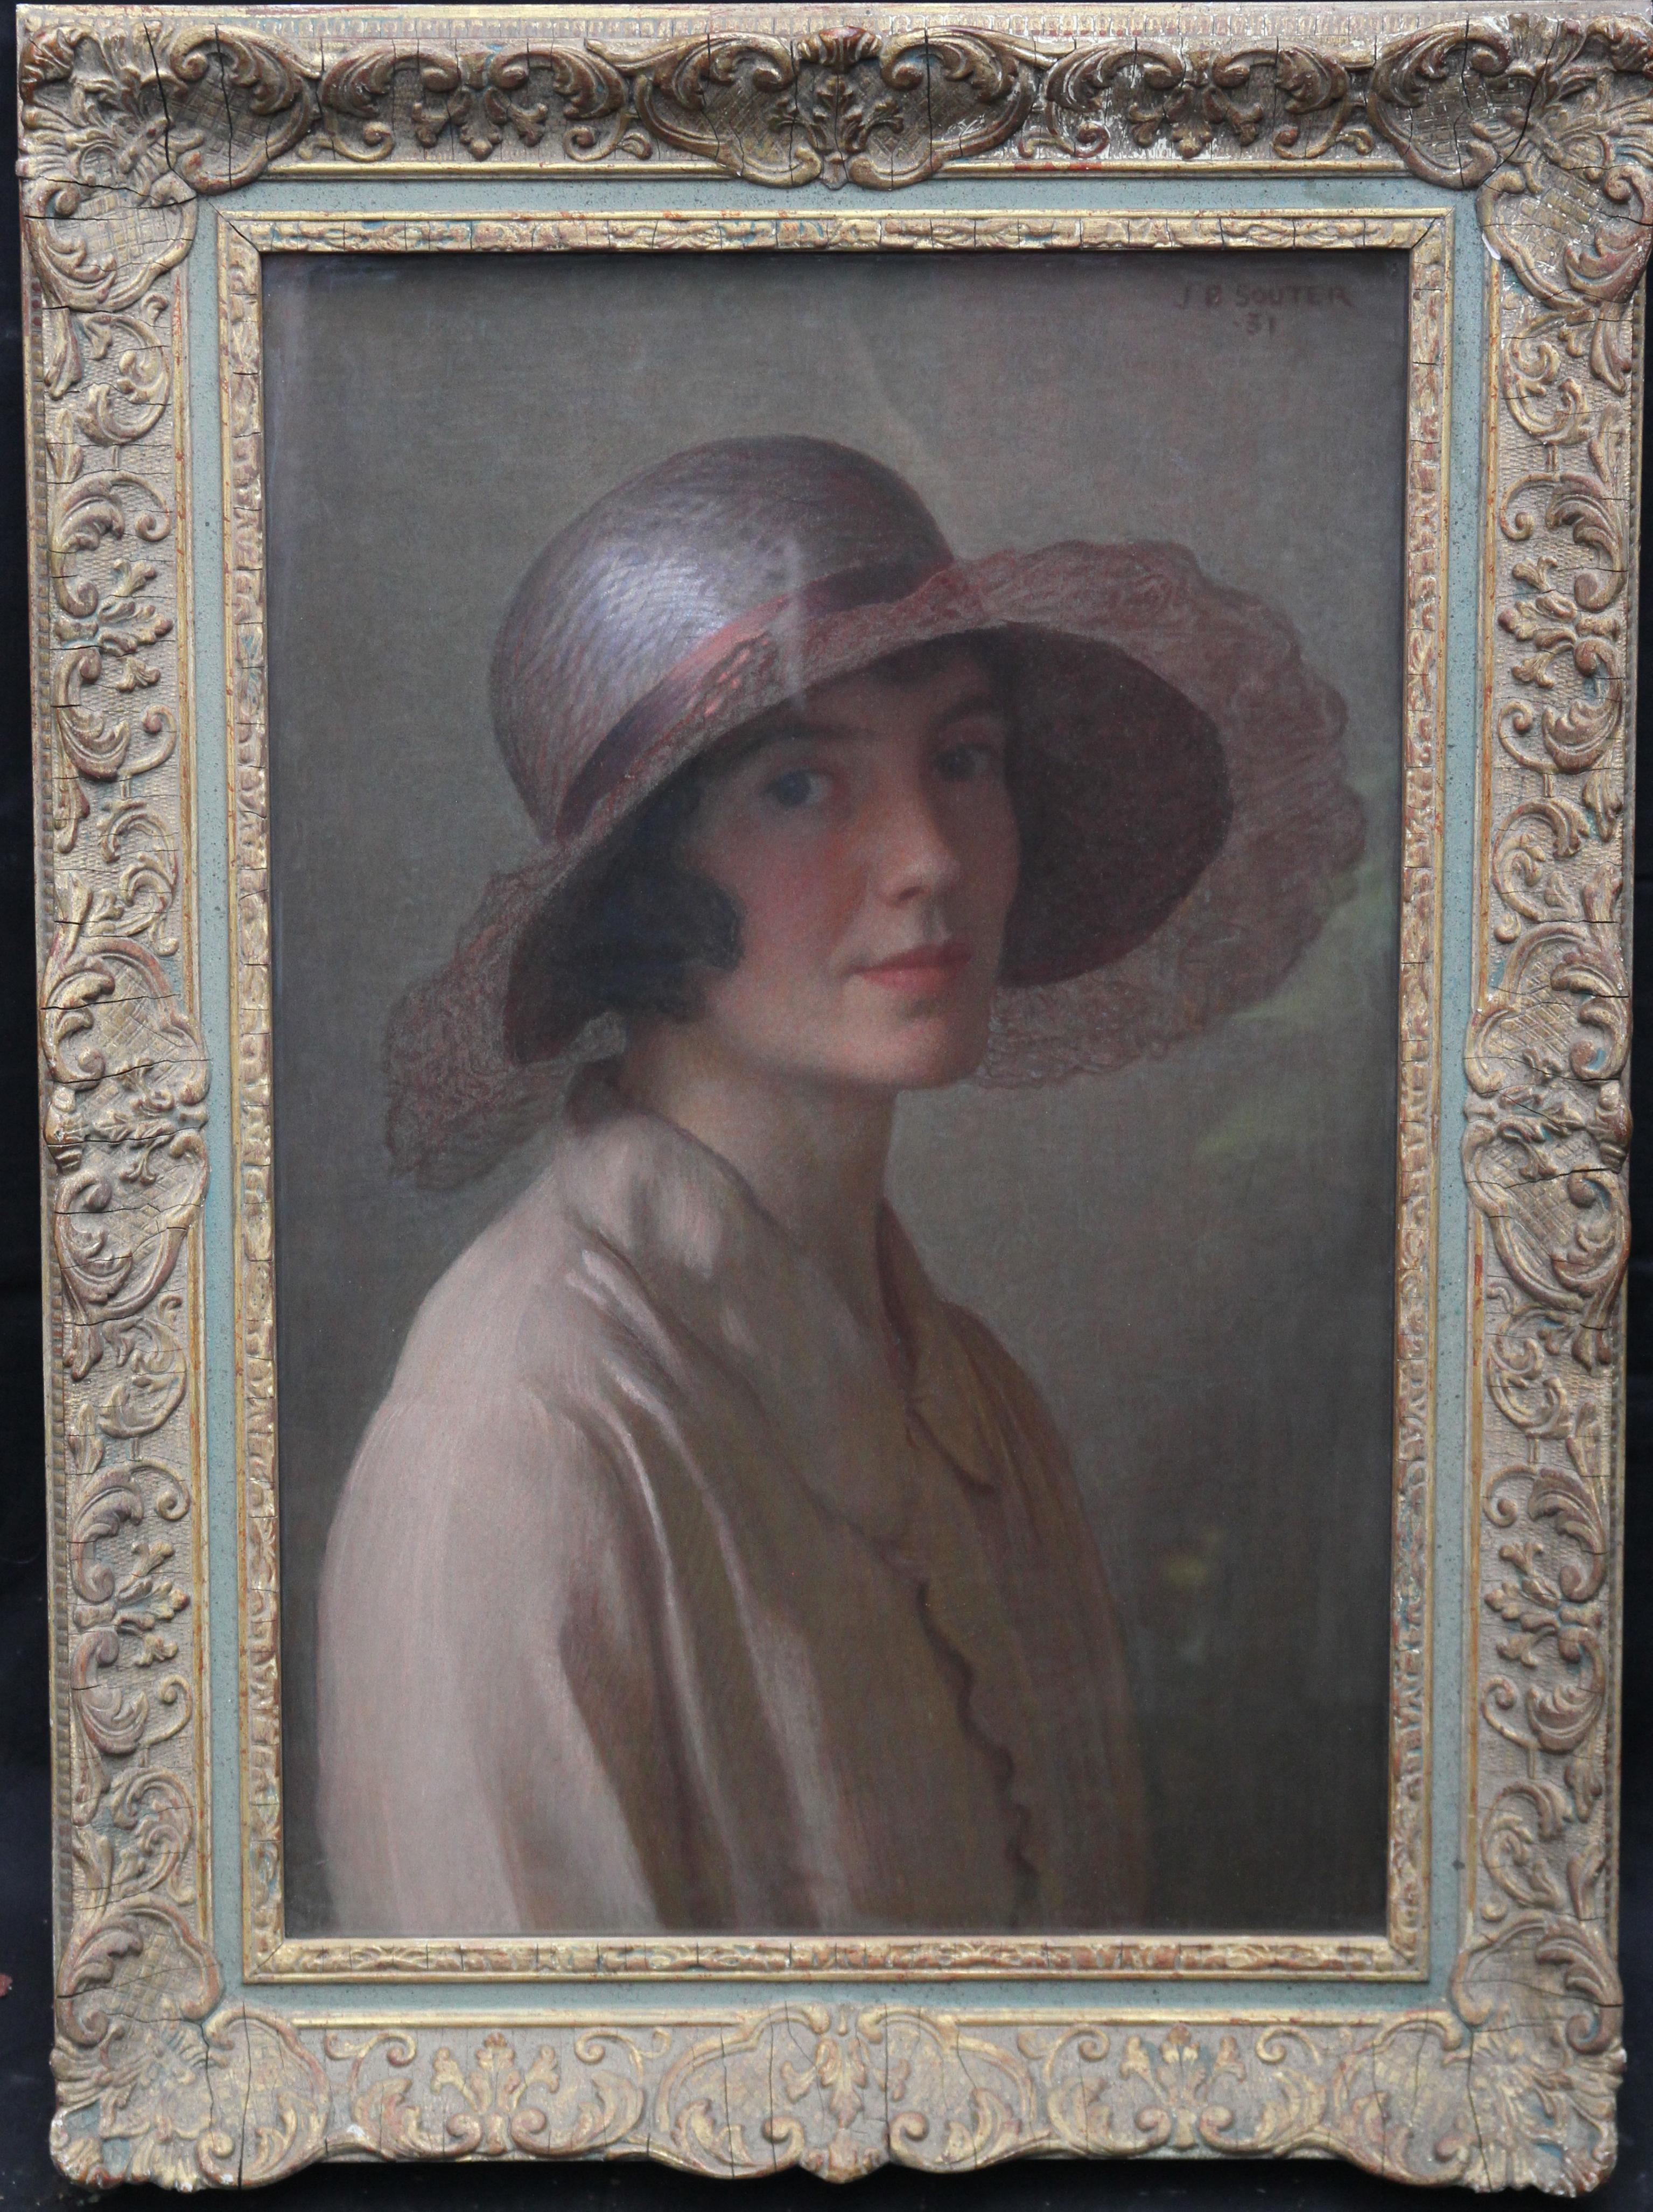 John Bulloch Souter Portrait Painting - The Pink Bonnet - Scottish art oil pastel portrait painting of artist's wife